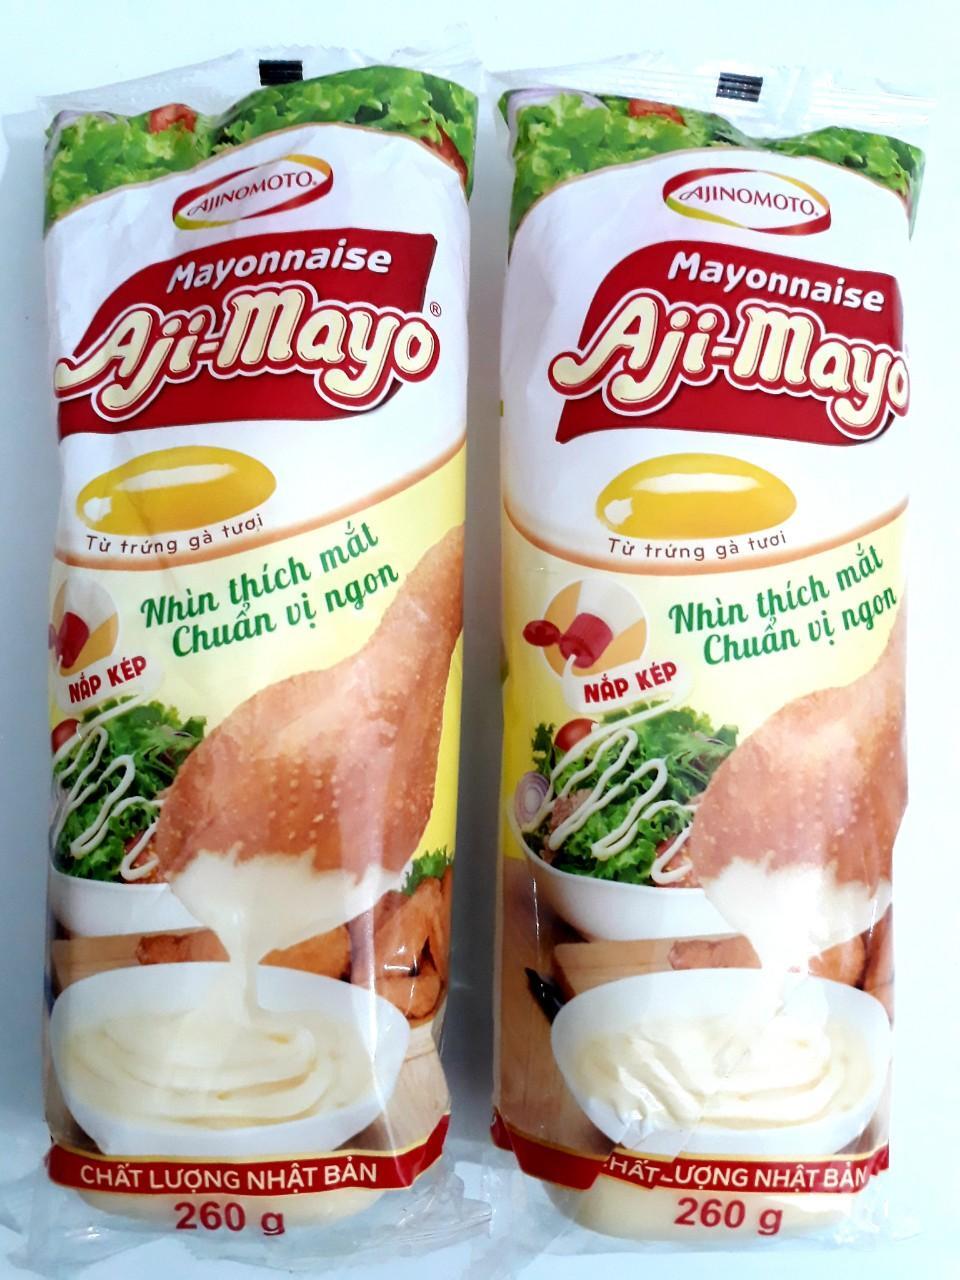 Sốt mayonnaise Aji-mayo chai 260g